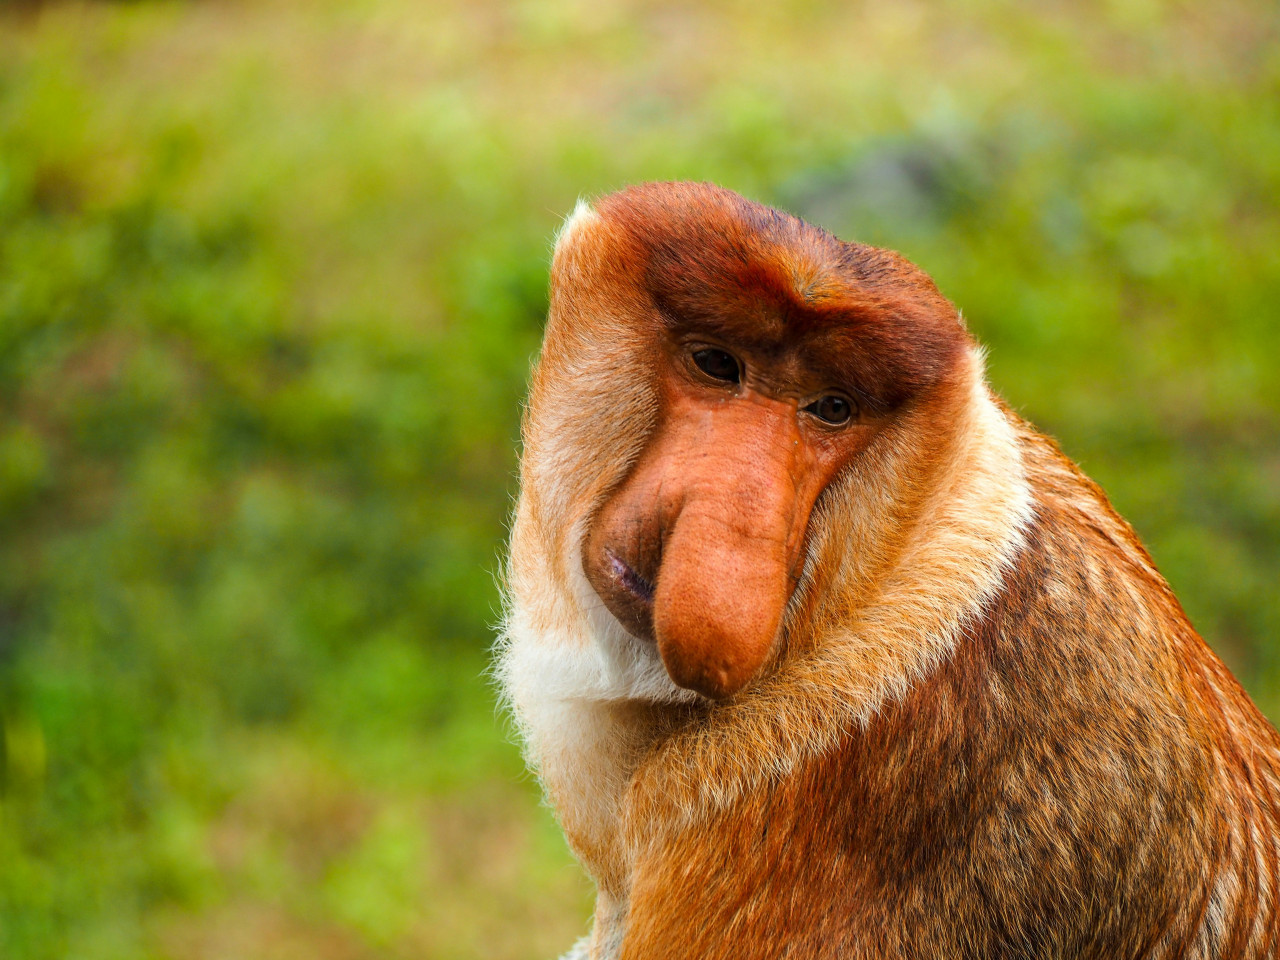 El tamaño de la nariz de estos monos es clave para atraer a las hembras. Foto: Unsplash.